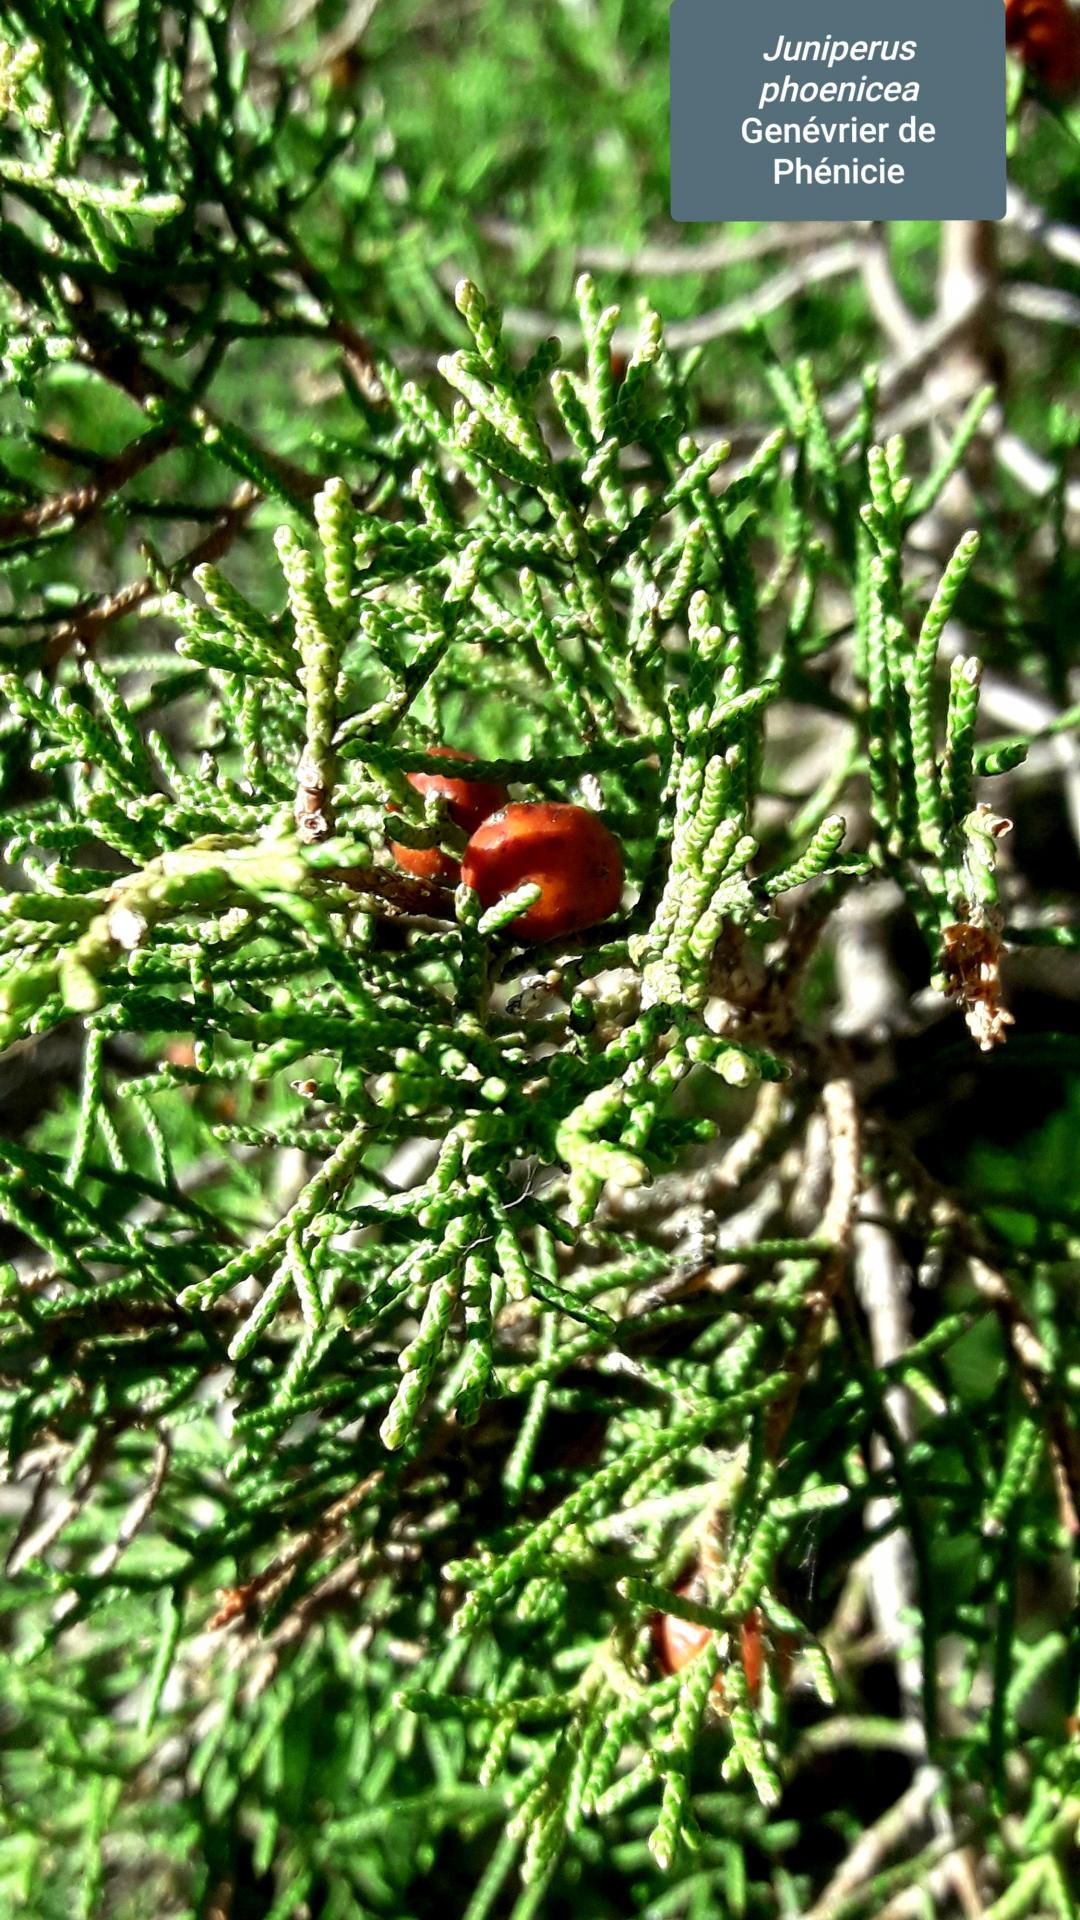 Juniperus phoenica 17/02/21